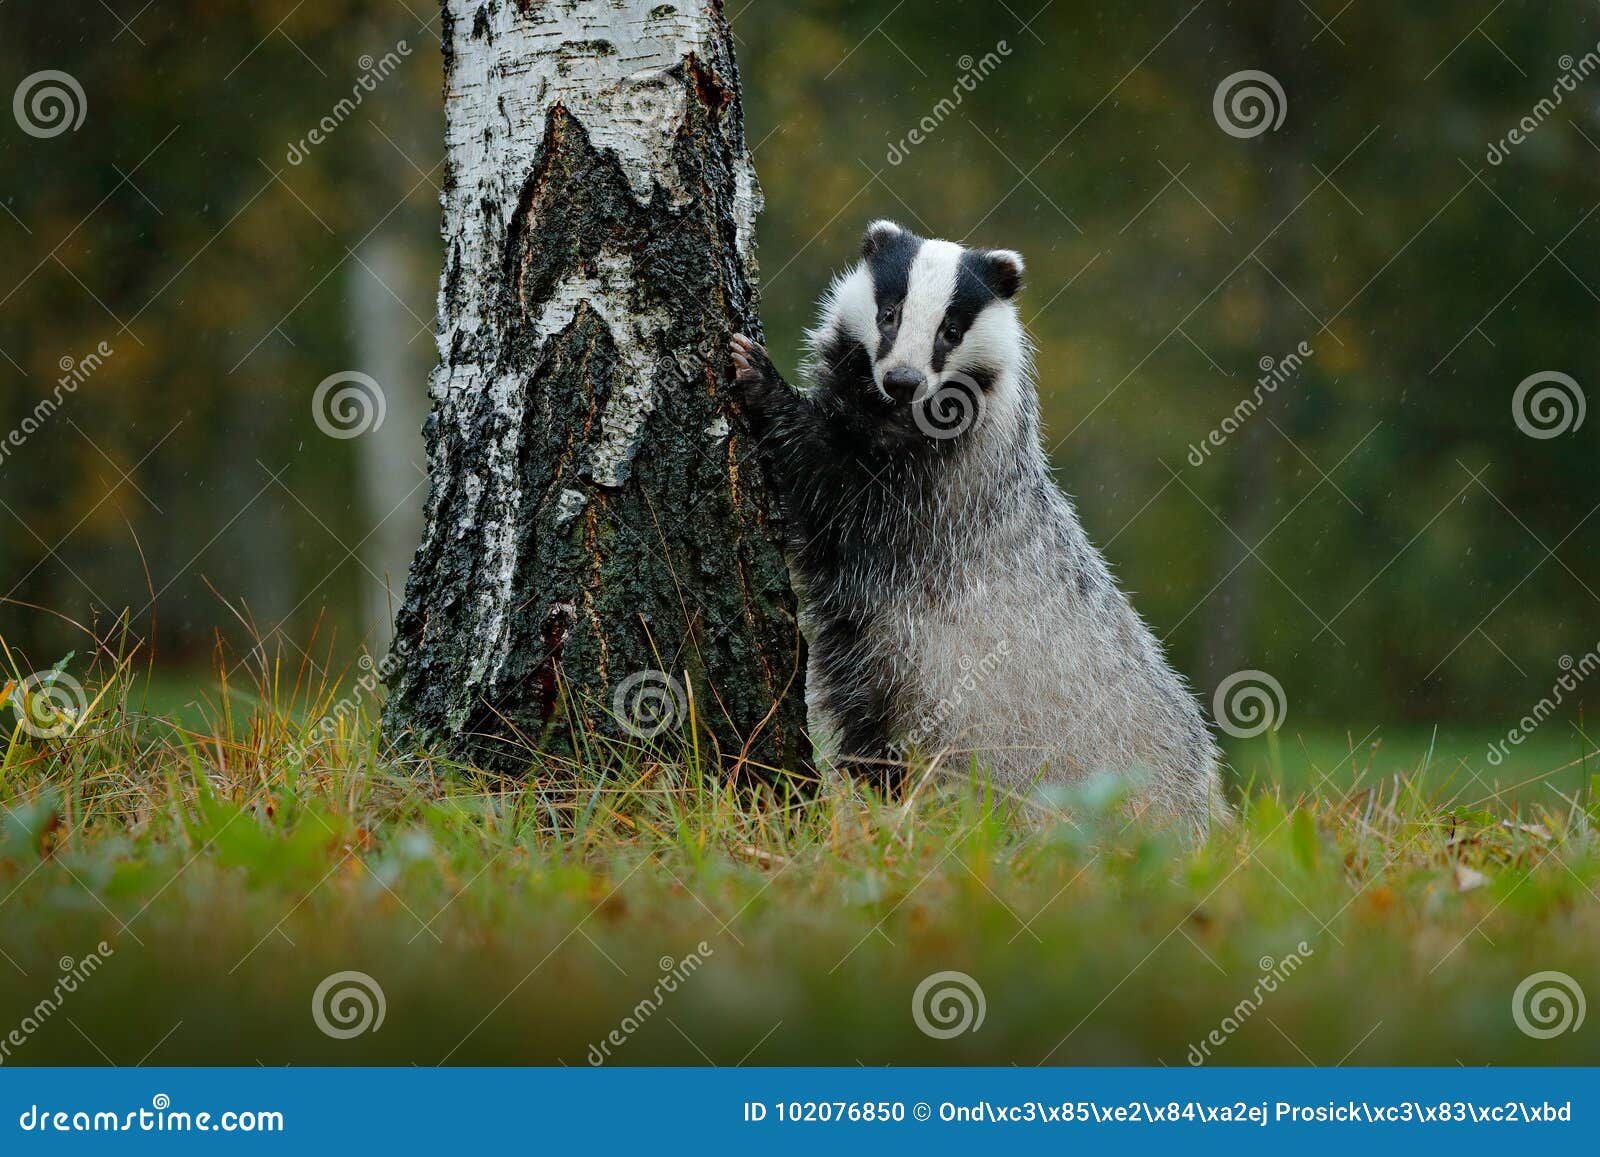 badger in forest, animal nature habitat, germany. wildlife scene. wild badger, meles meles, animal in wood. european badger, autum